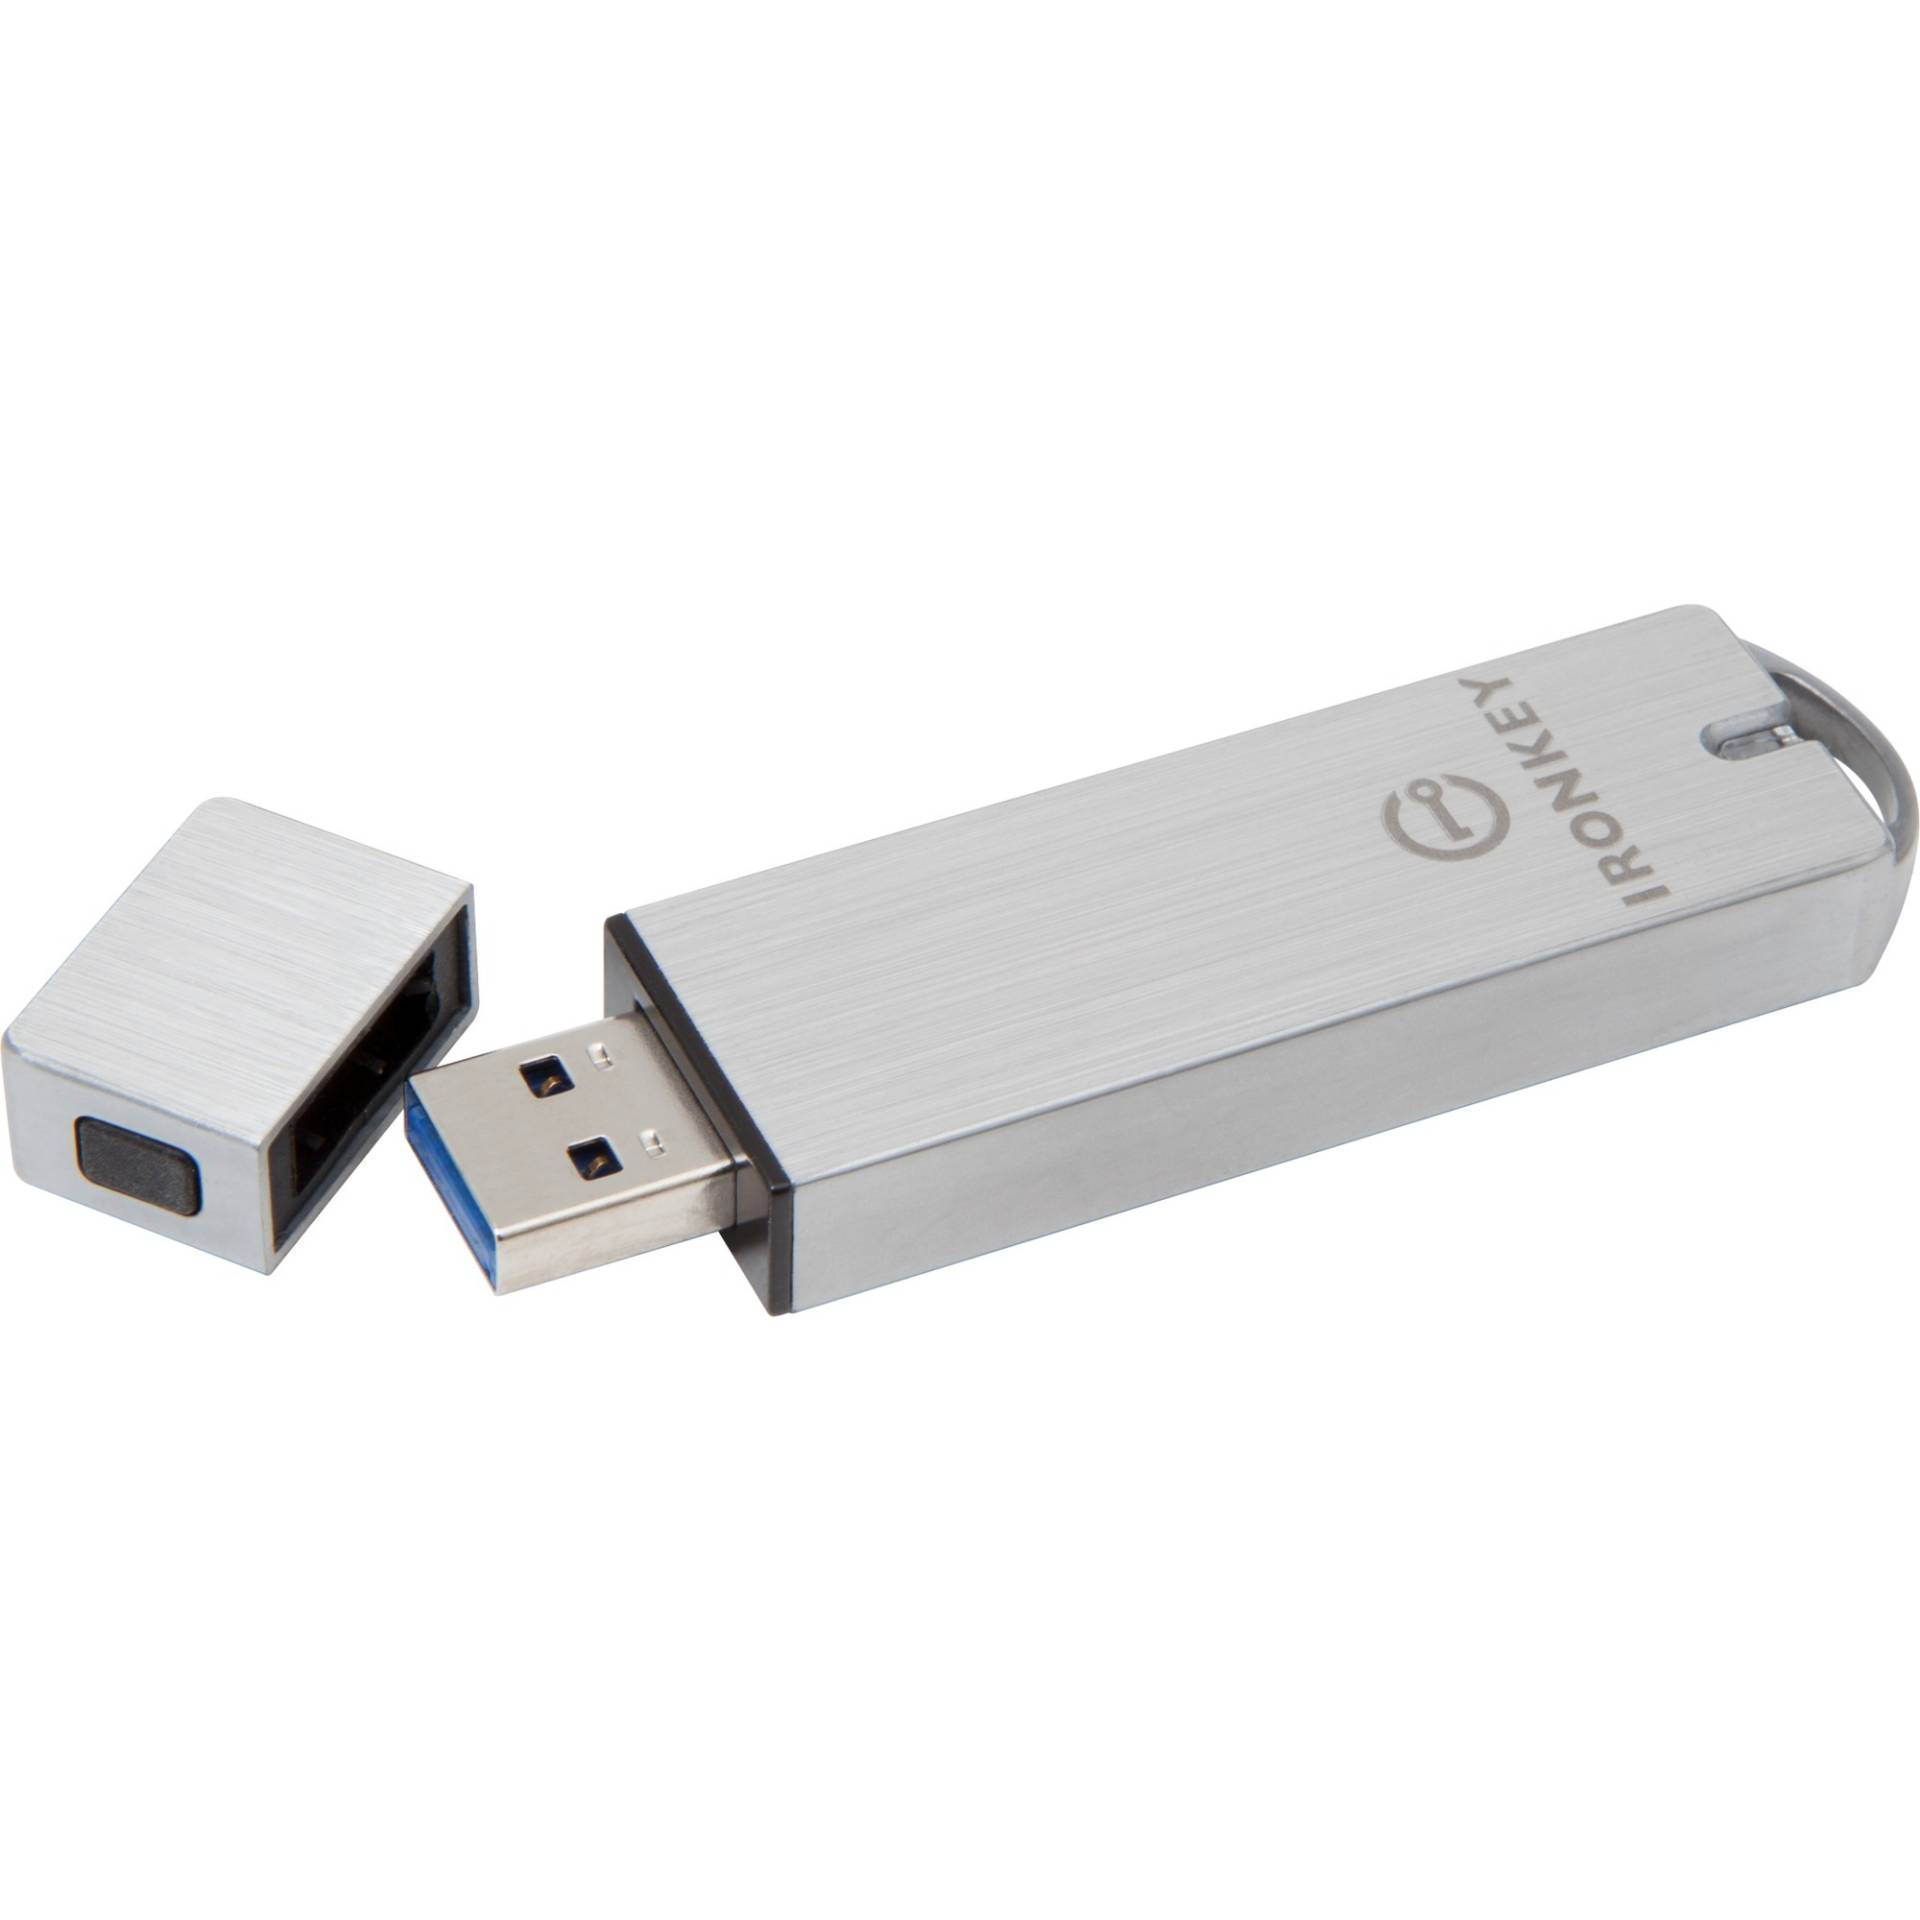 IronKey S1000 Enterprise 8 GB, USB-Stick von Kingston